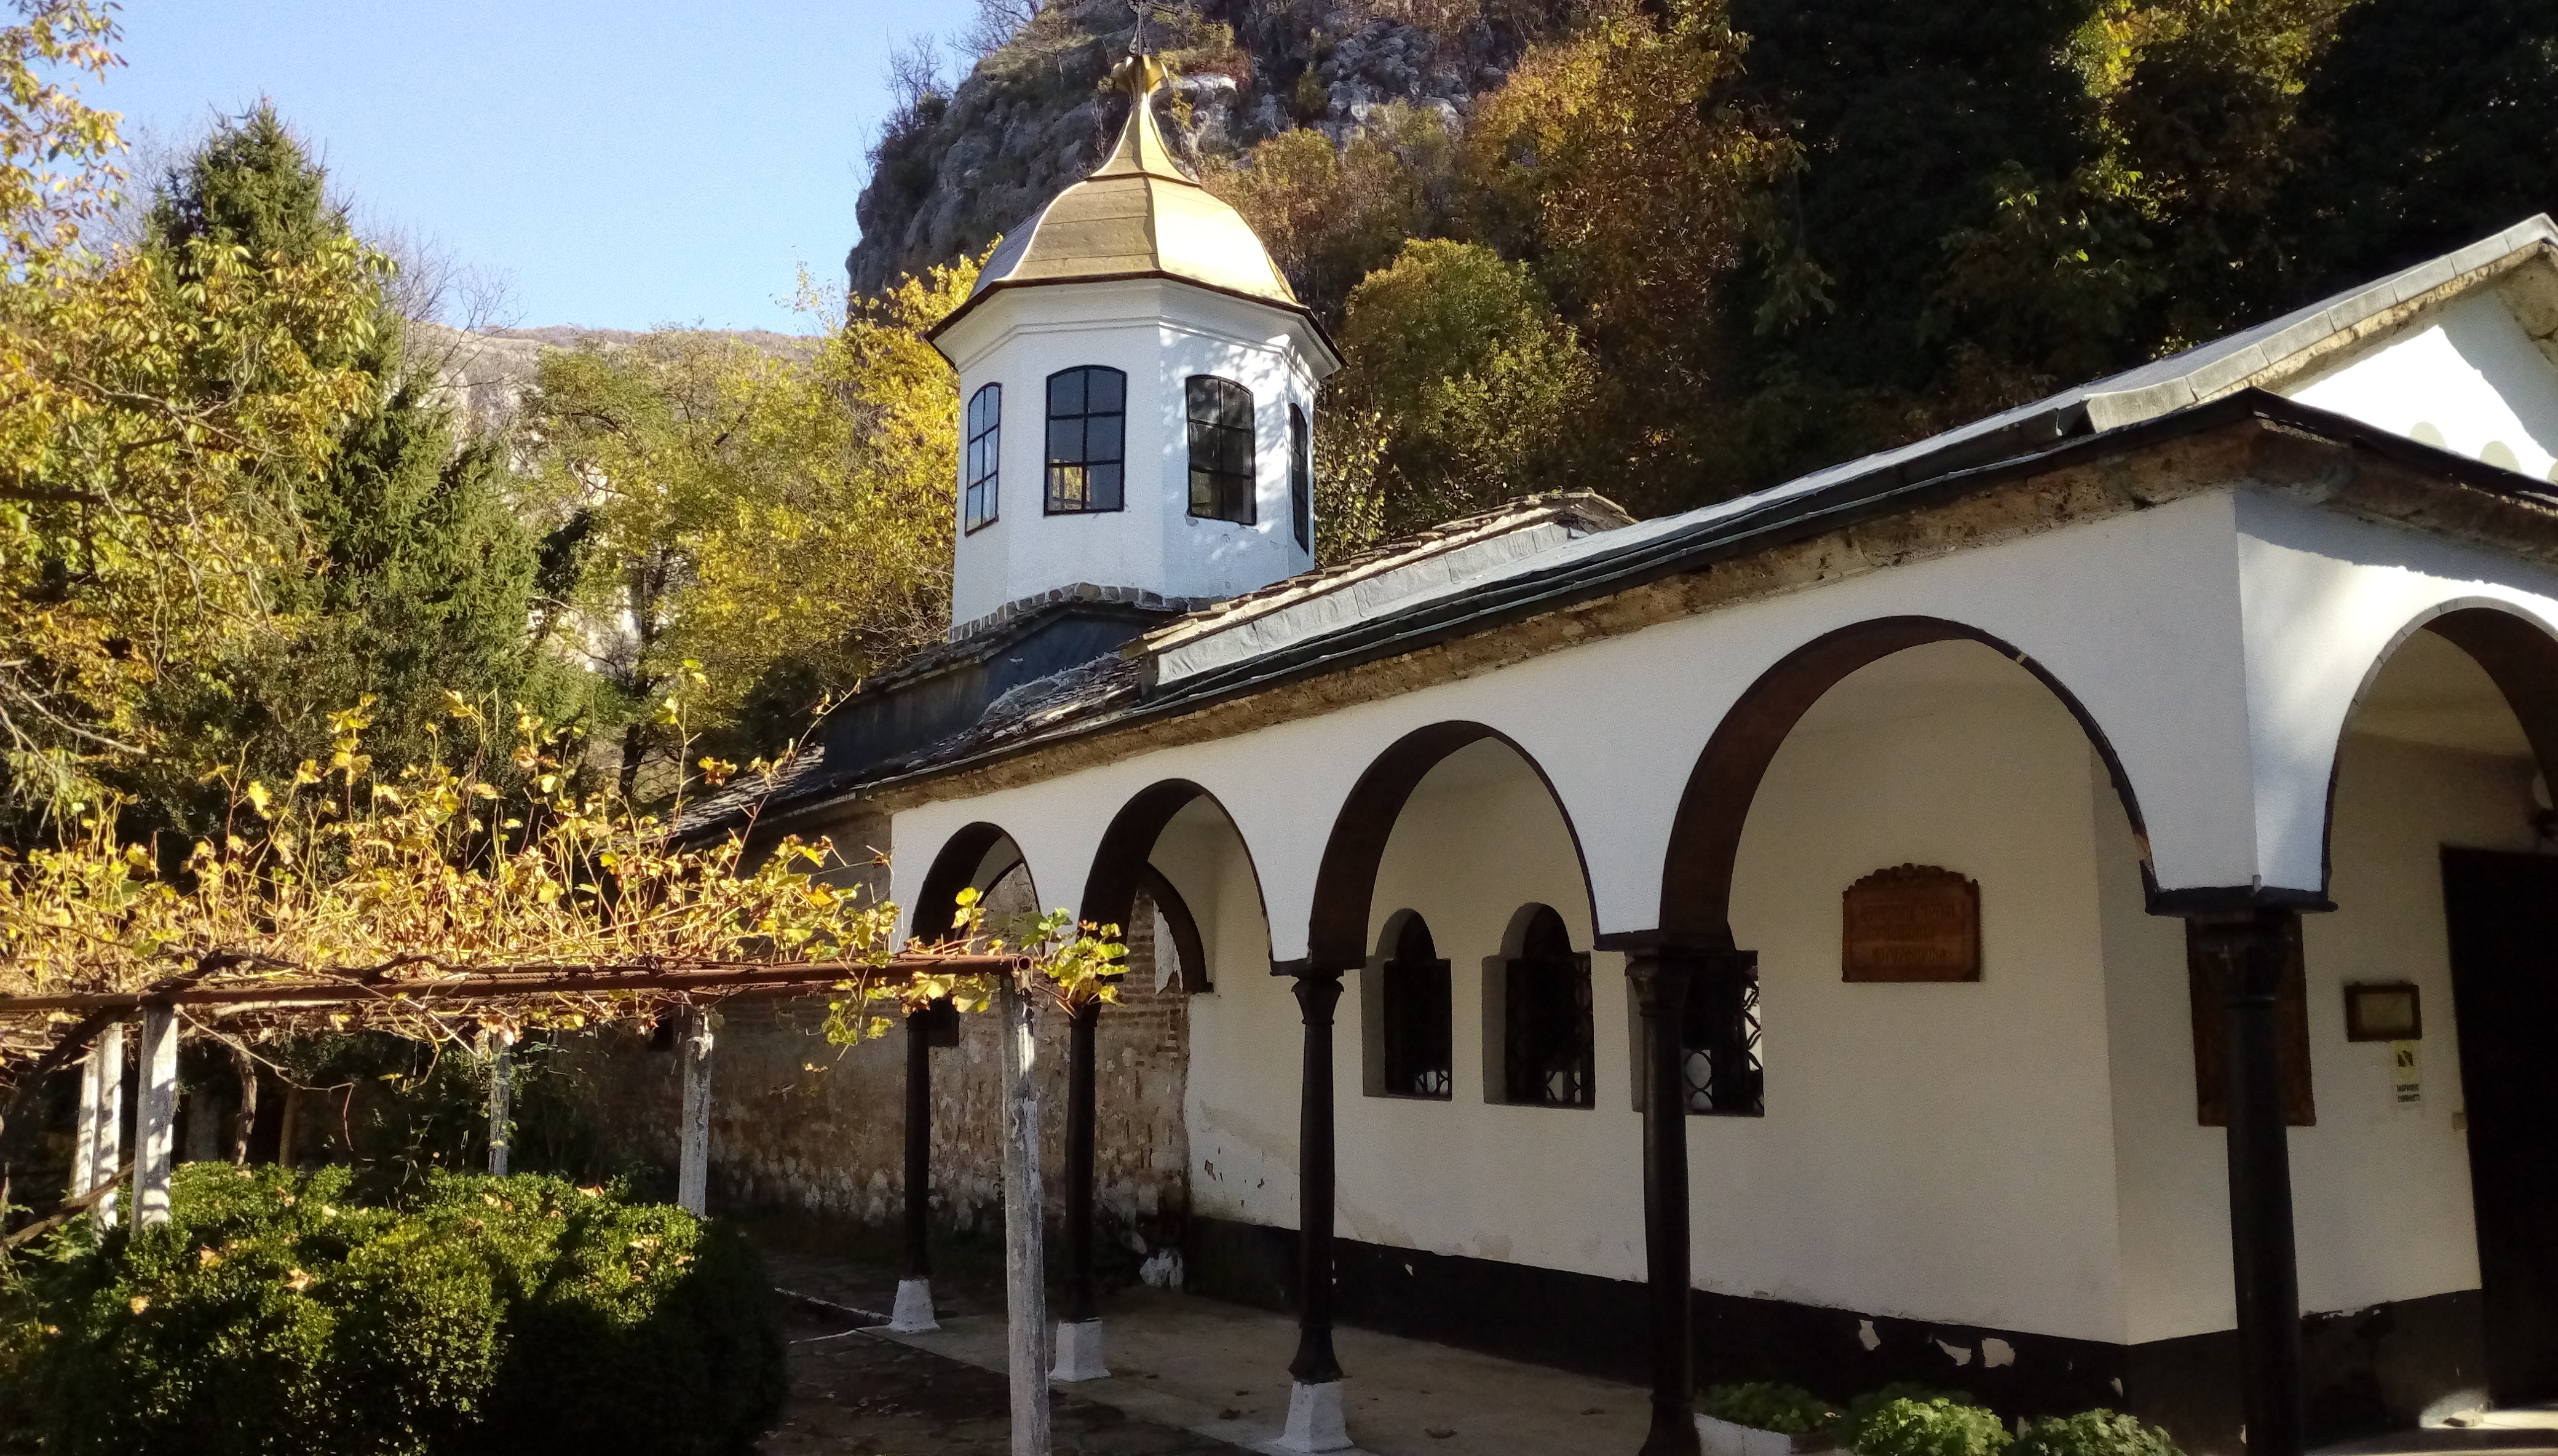 Черепишкият манастир: перлата на Искърското дефиле